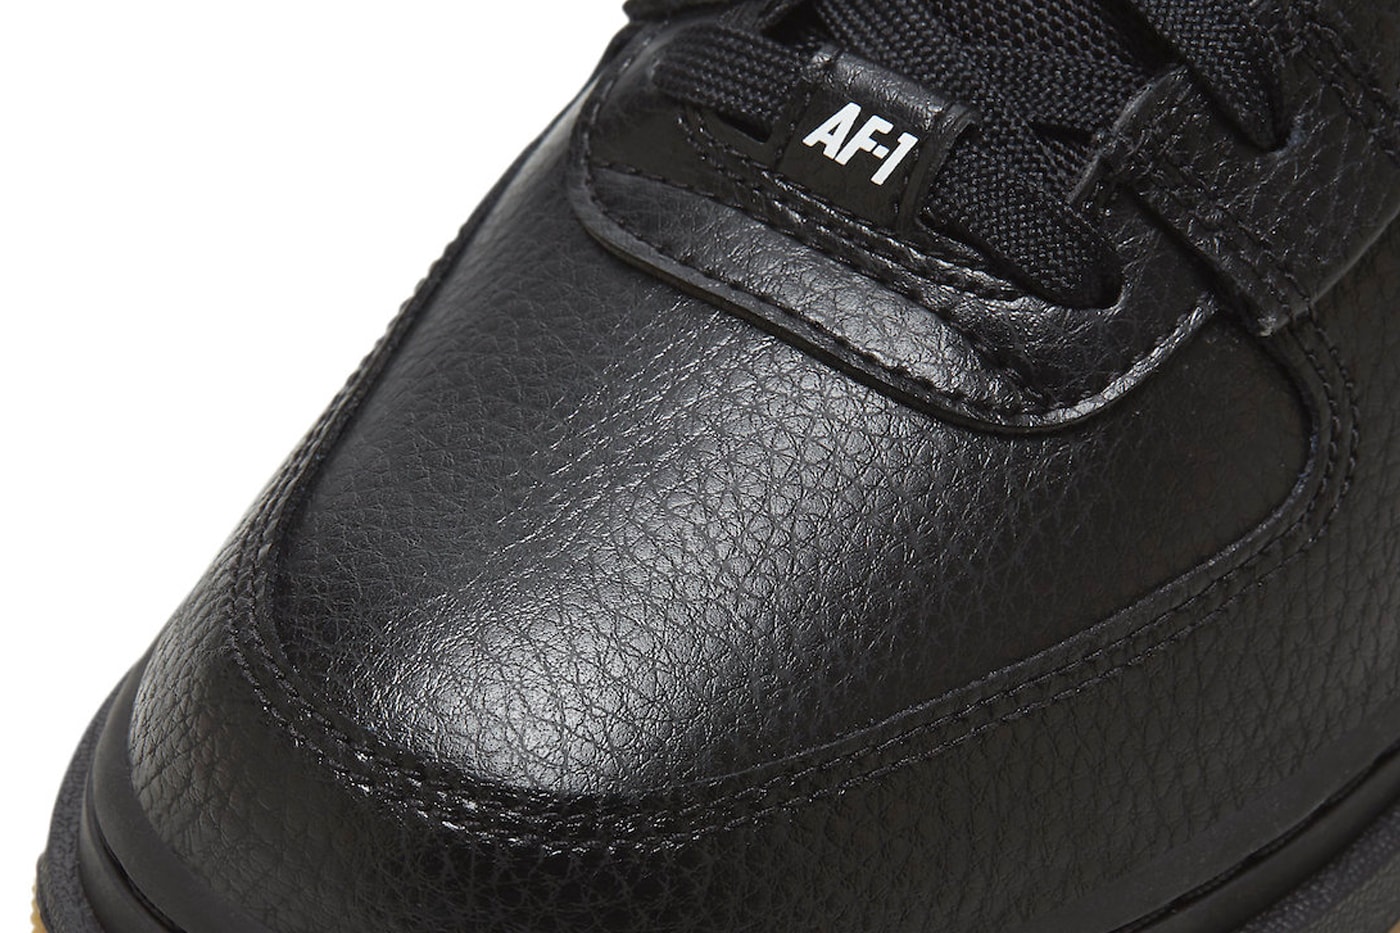 Nike's Air Force 1 Low Utility Surfaces in Black/Gum - Sneaker Freaker